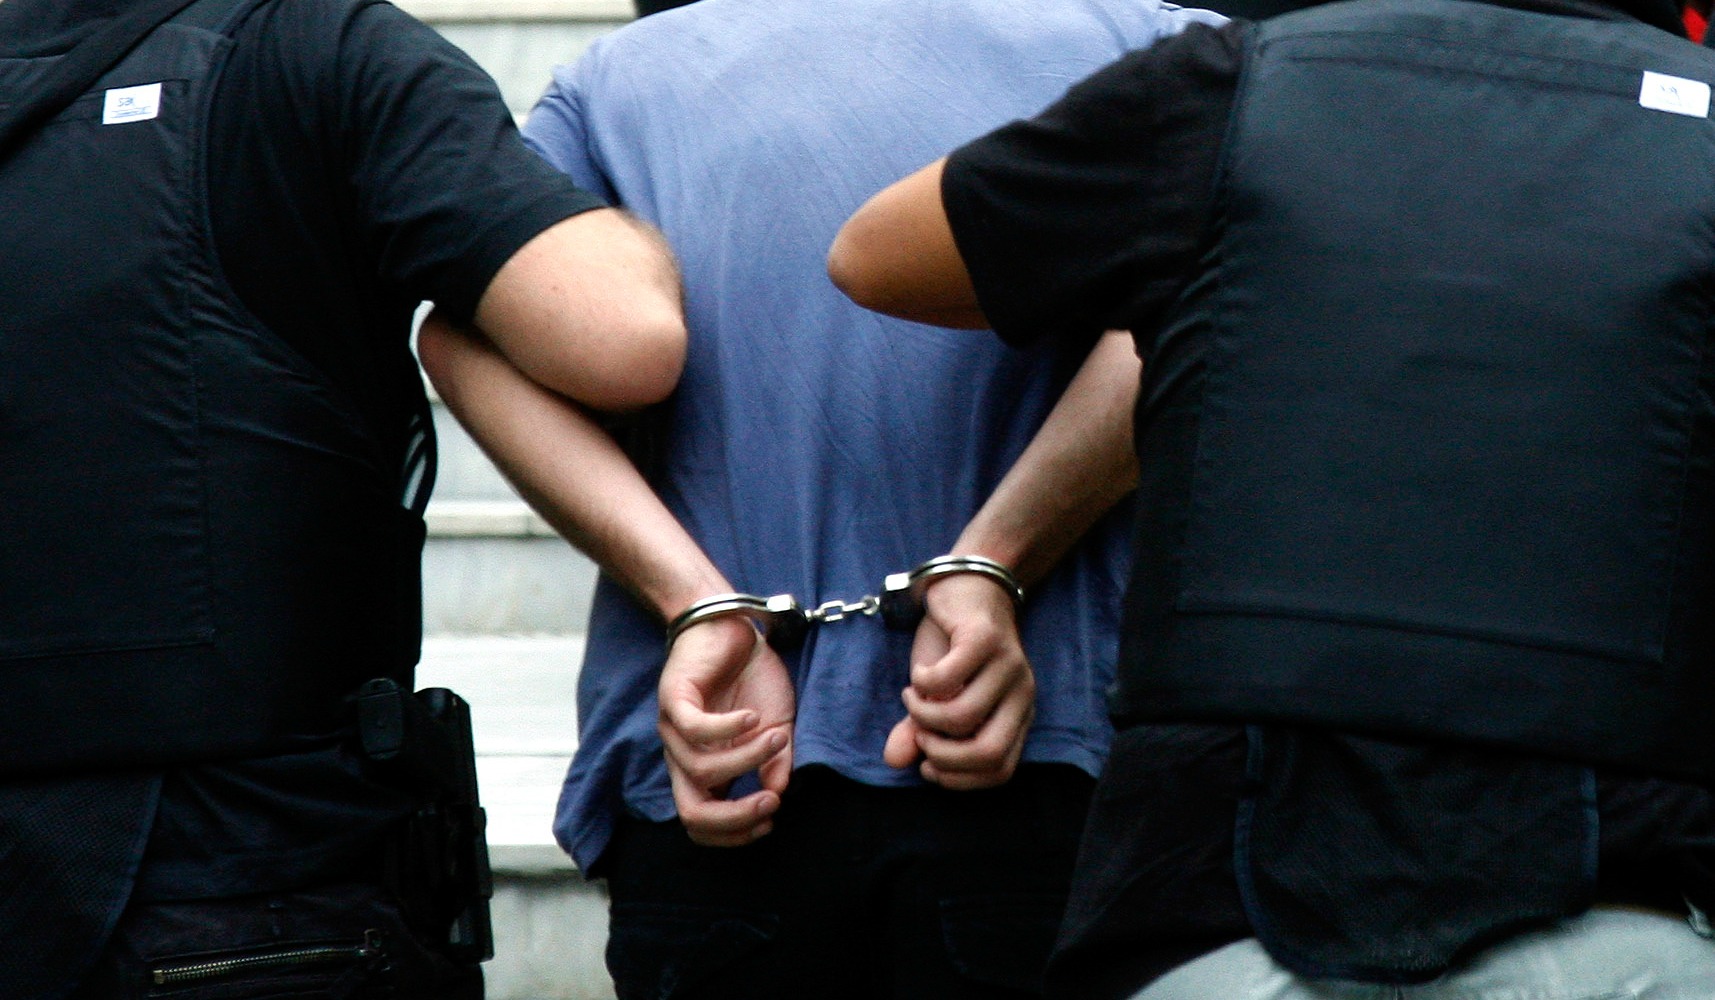 Συνελήφθησαν μέλη κυκλώματος που διακινούσε παράνομα αλλοδαπούς